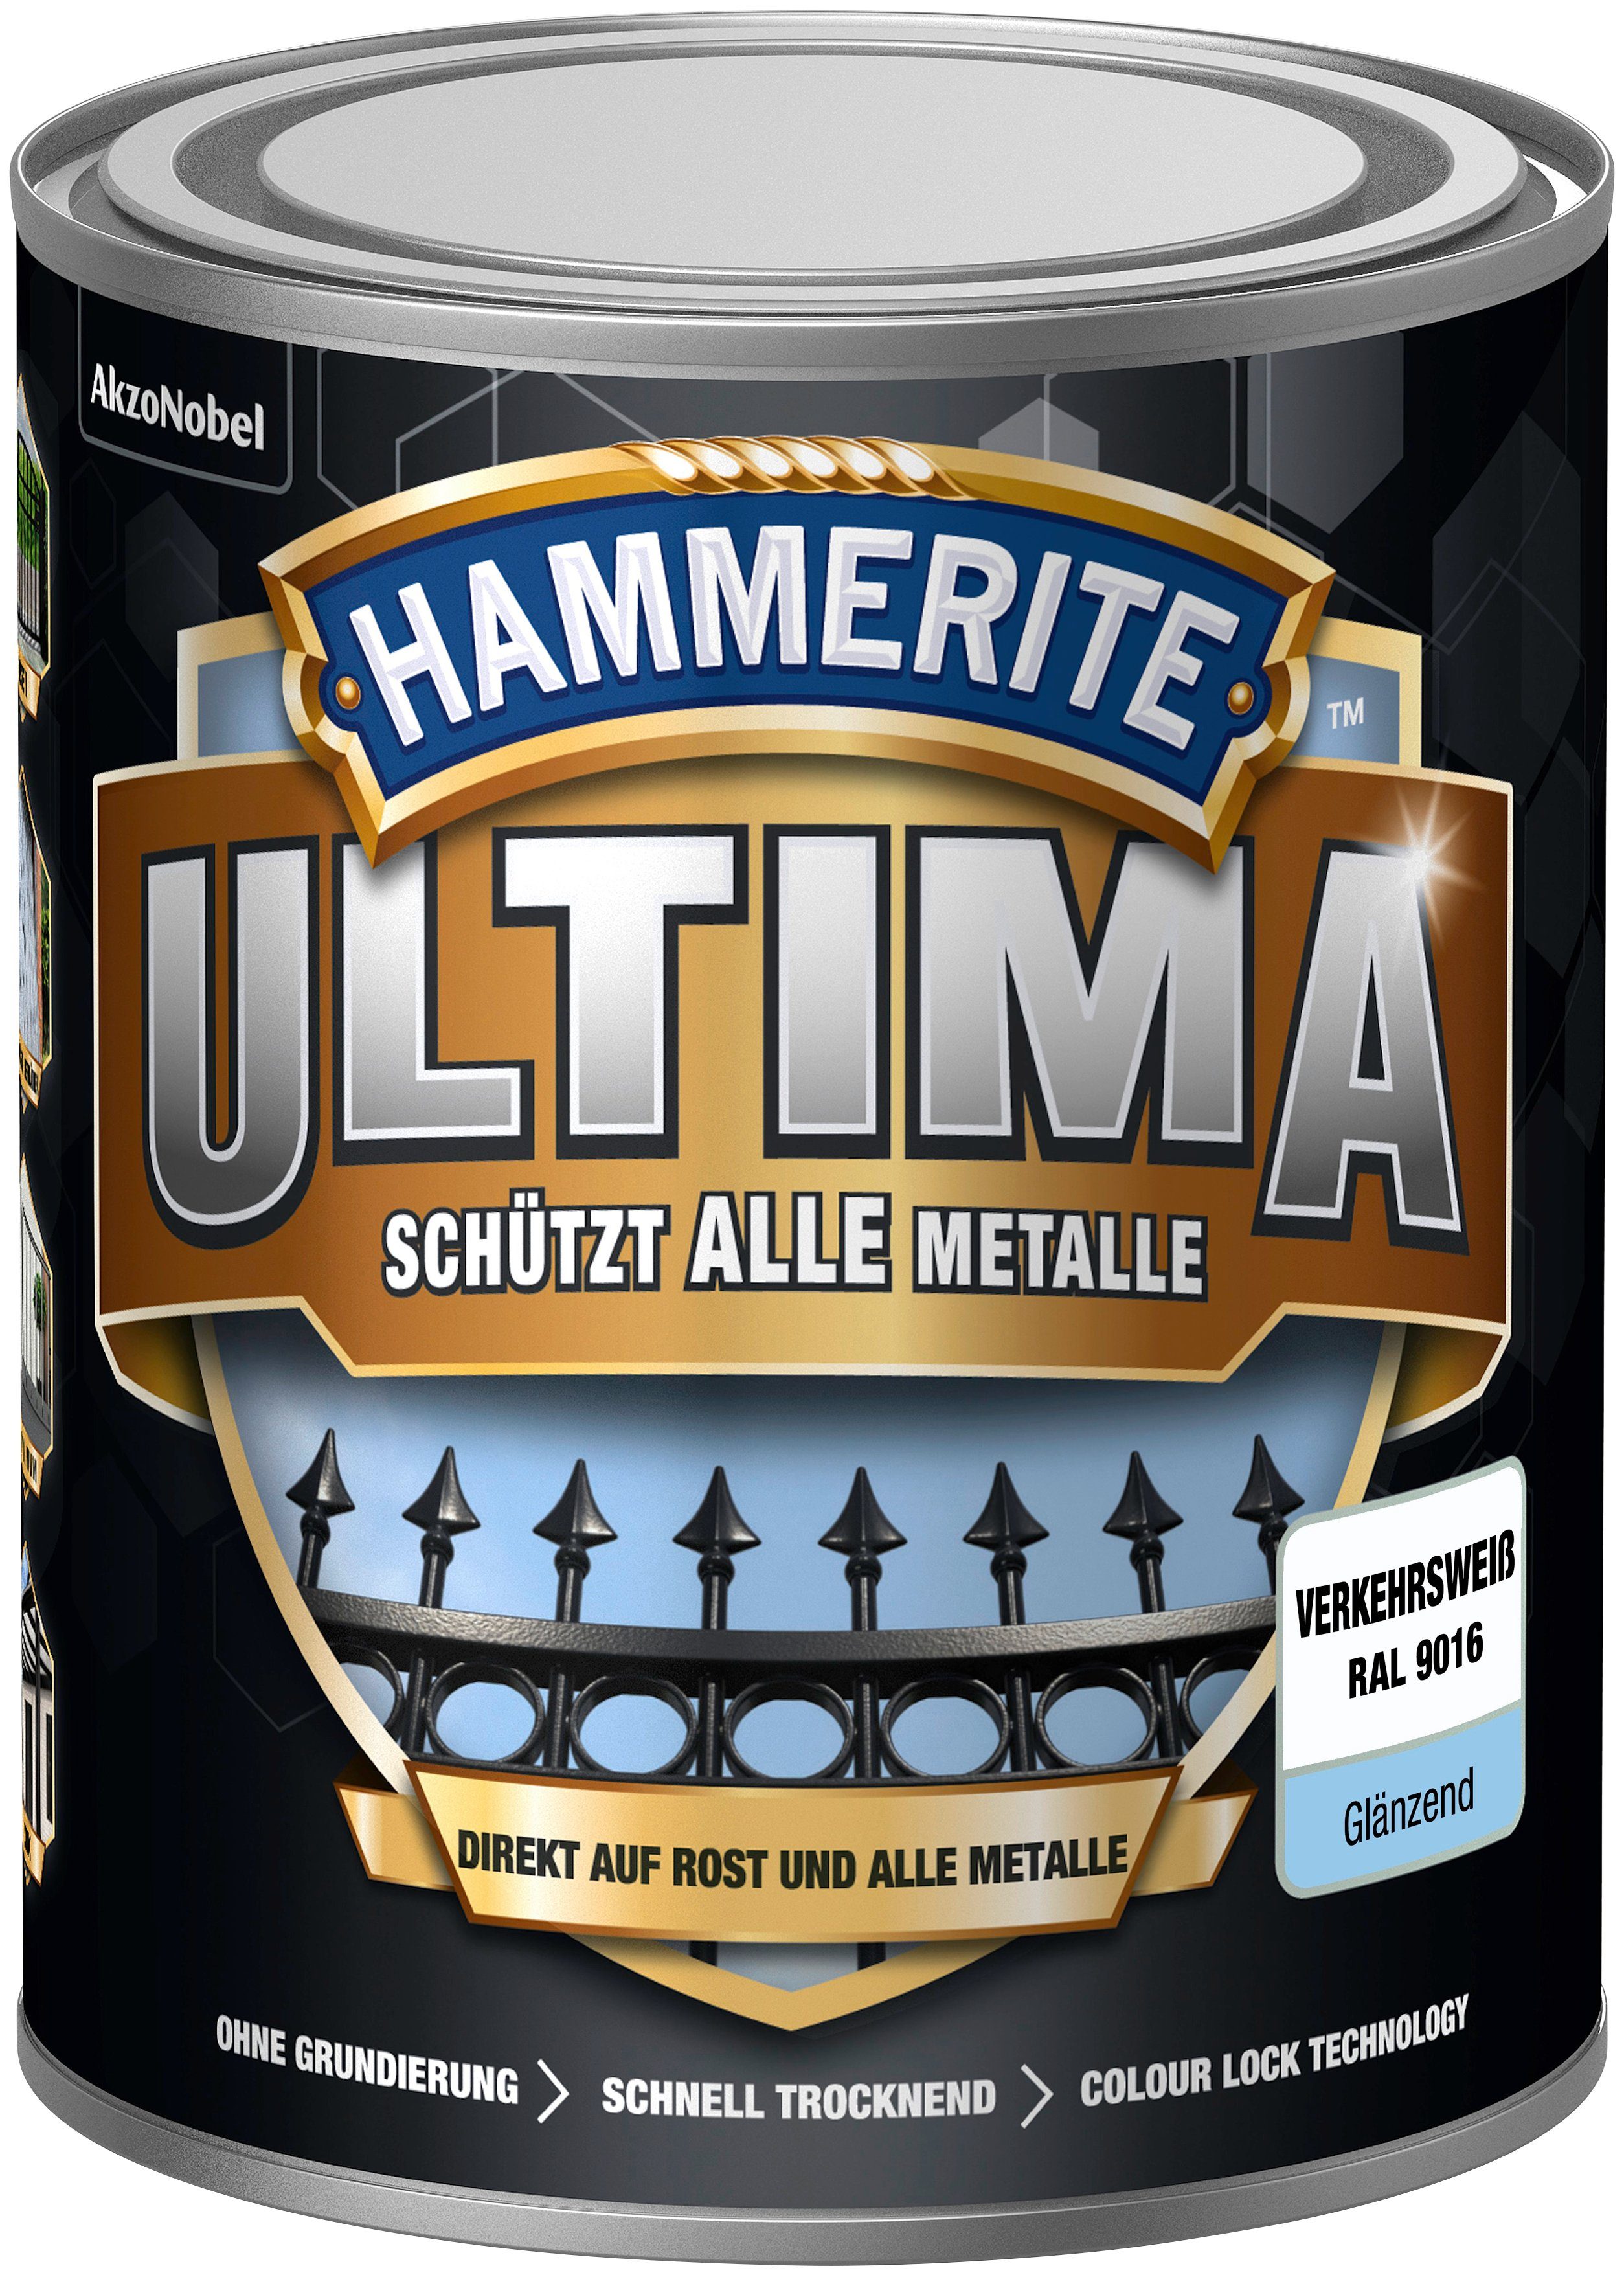 Hammerite  Metallschutzlack ULTIMA schützt alle Metalle, 3in1, verkehrsweiss RAL 9016, glänzend